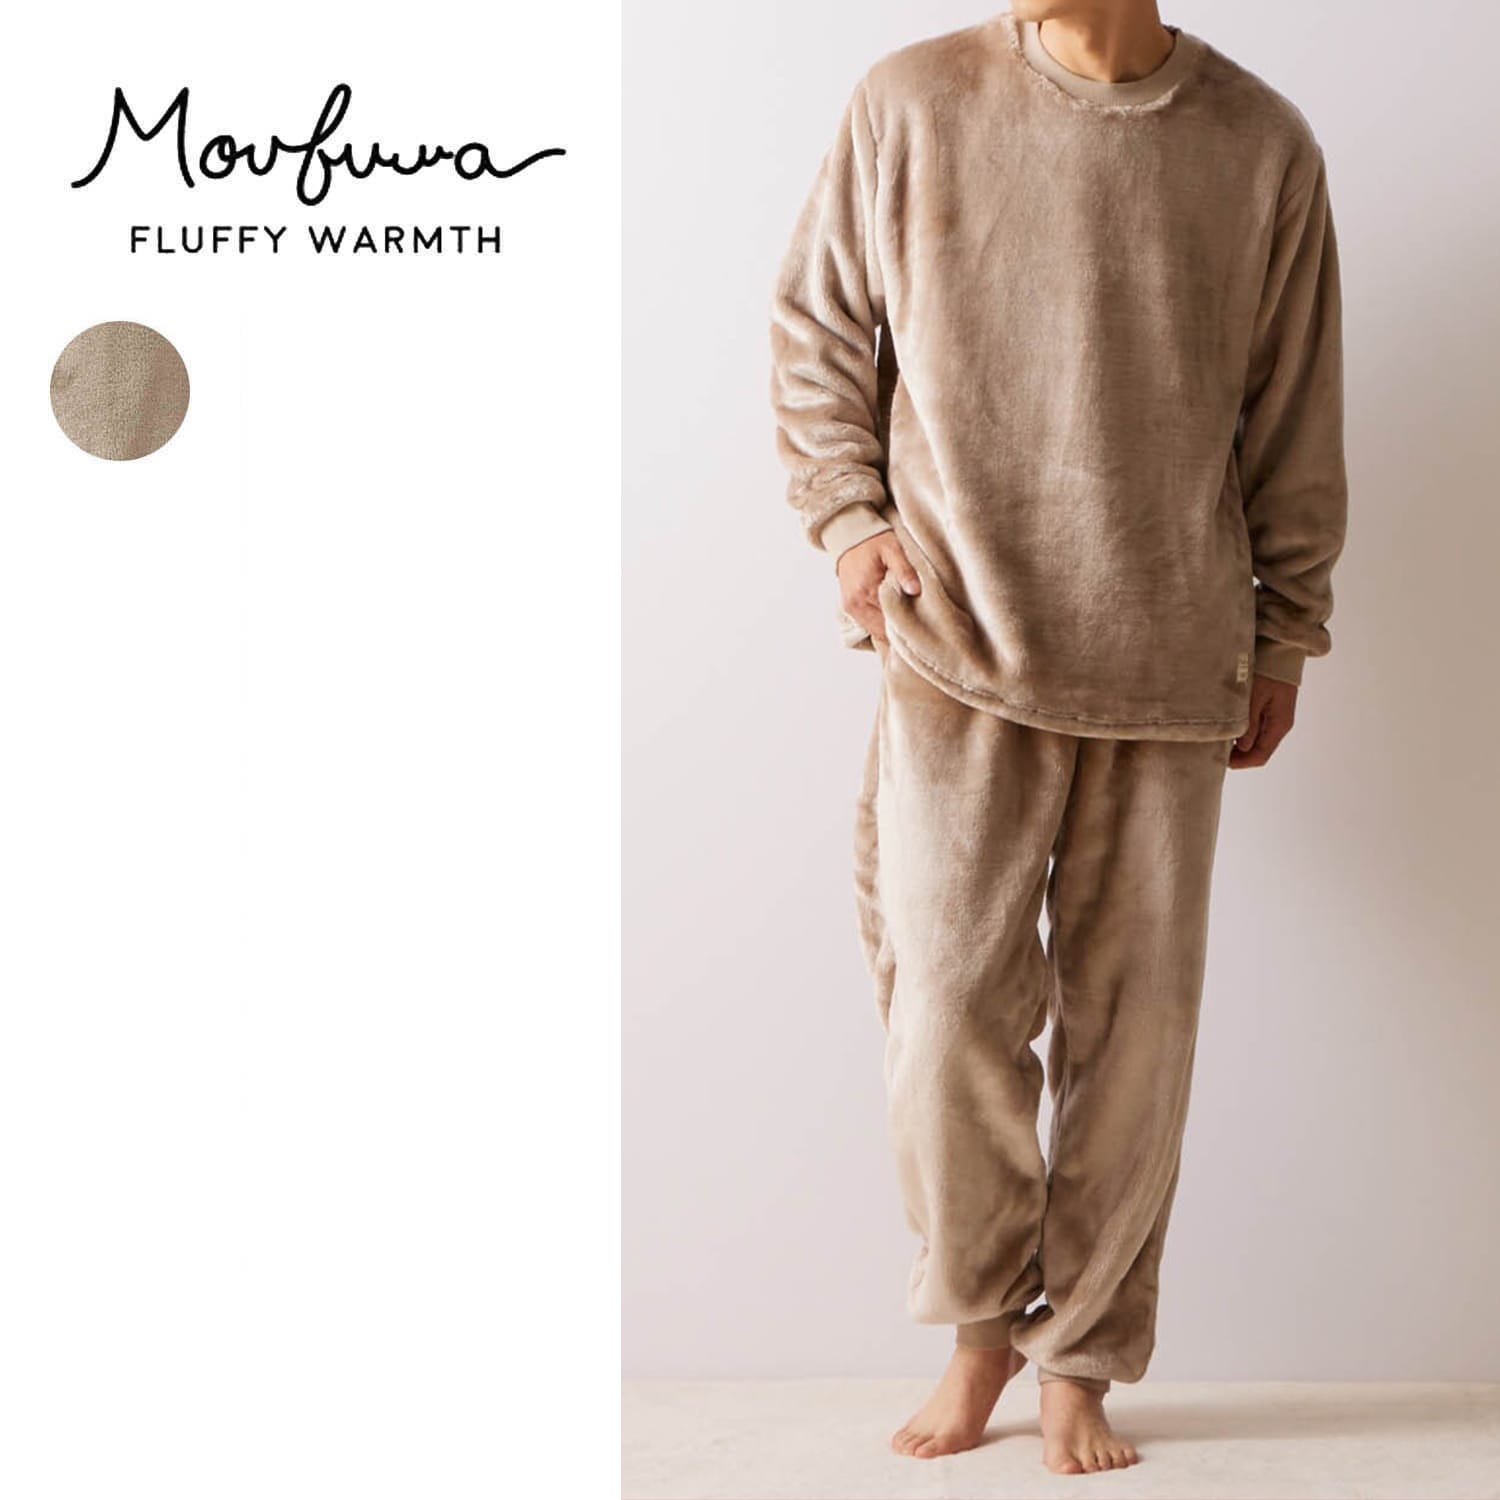 【モウフワ/moufuwa】毛布に包まれた様な温もりのユニセックスフリースパジャマ画像